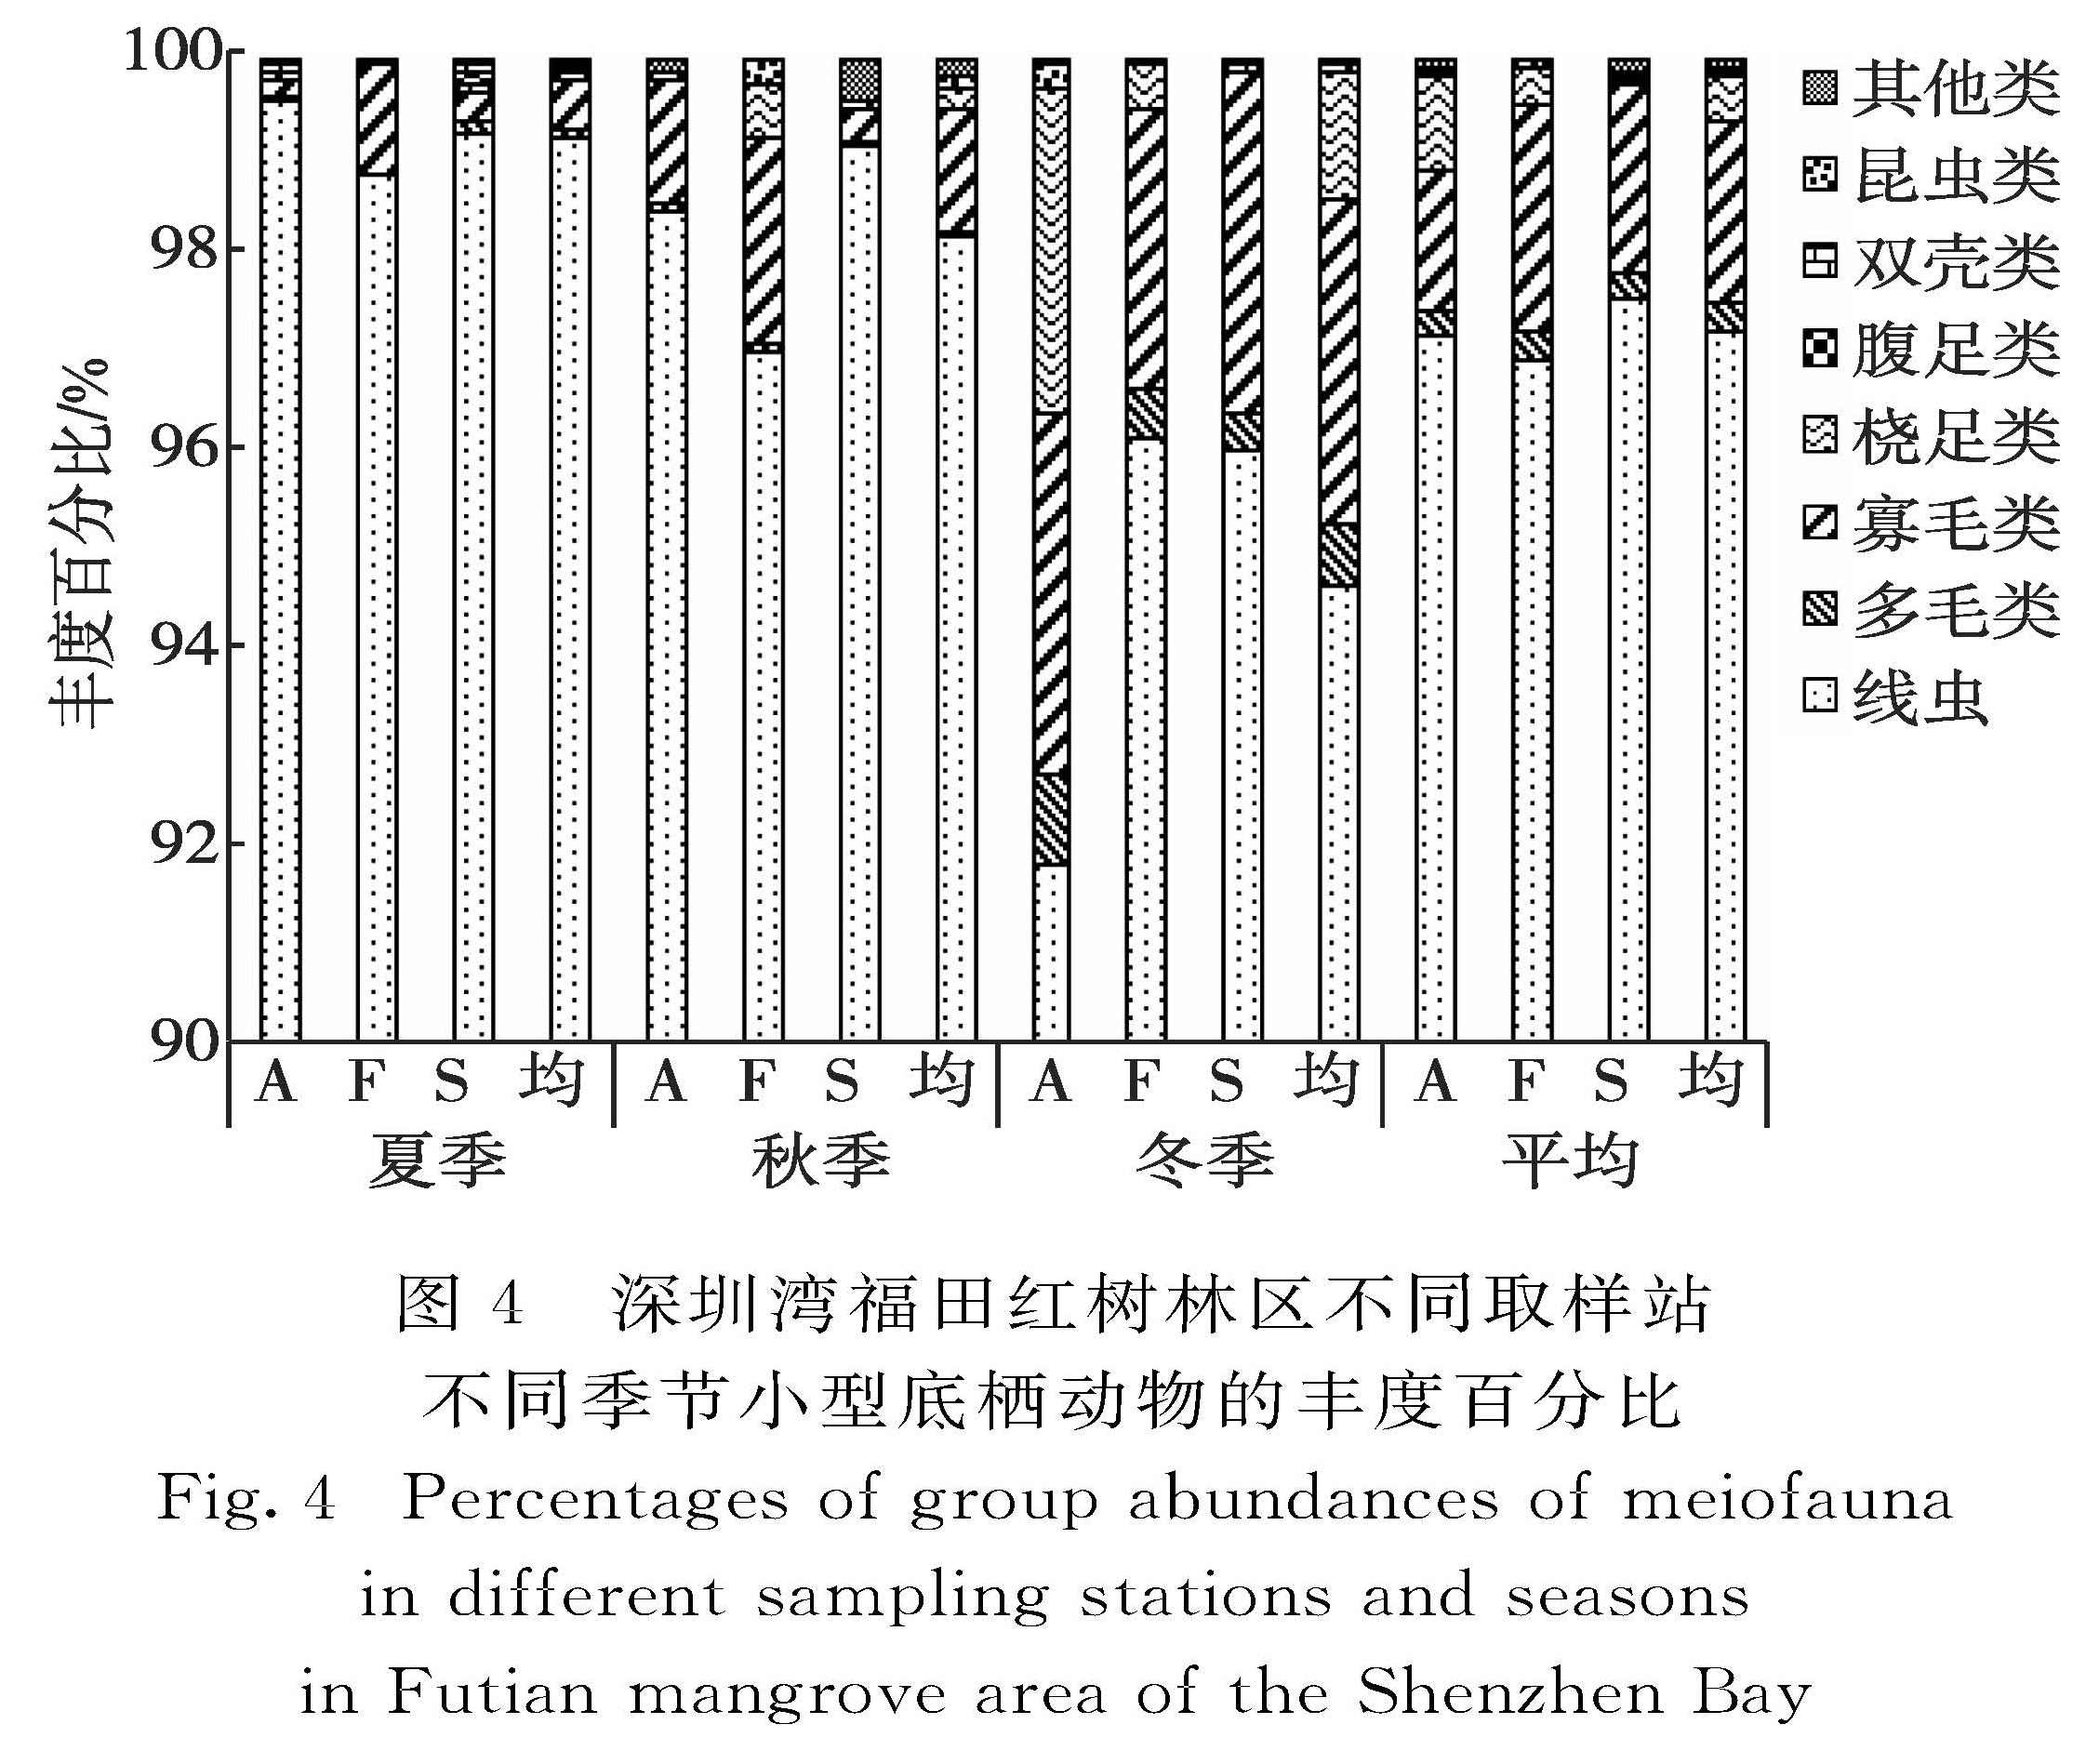 图4 深圳湾福田红树林区不同取样站不同季节小型底栖动物的丰度百分比<br/>Fig.4 Percentages of group abundances of meiofauna in different sampling stations and seasons in Futian mangrove area of the Shenzhen Bay